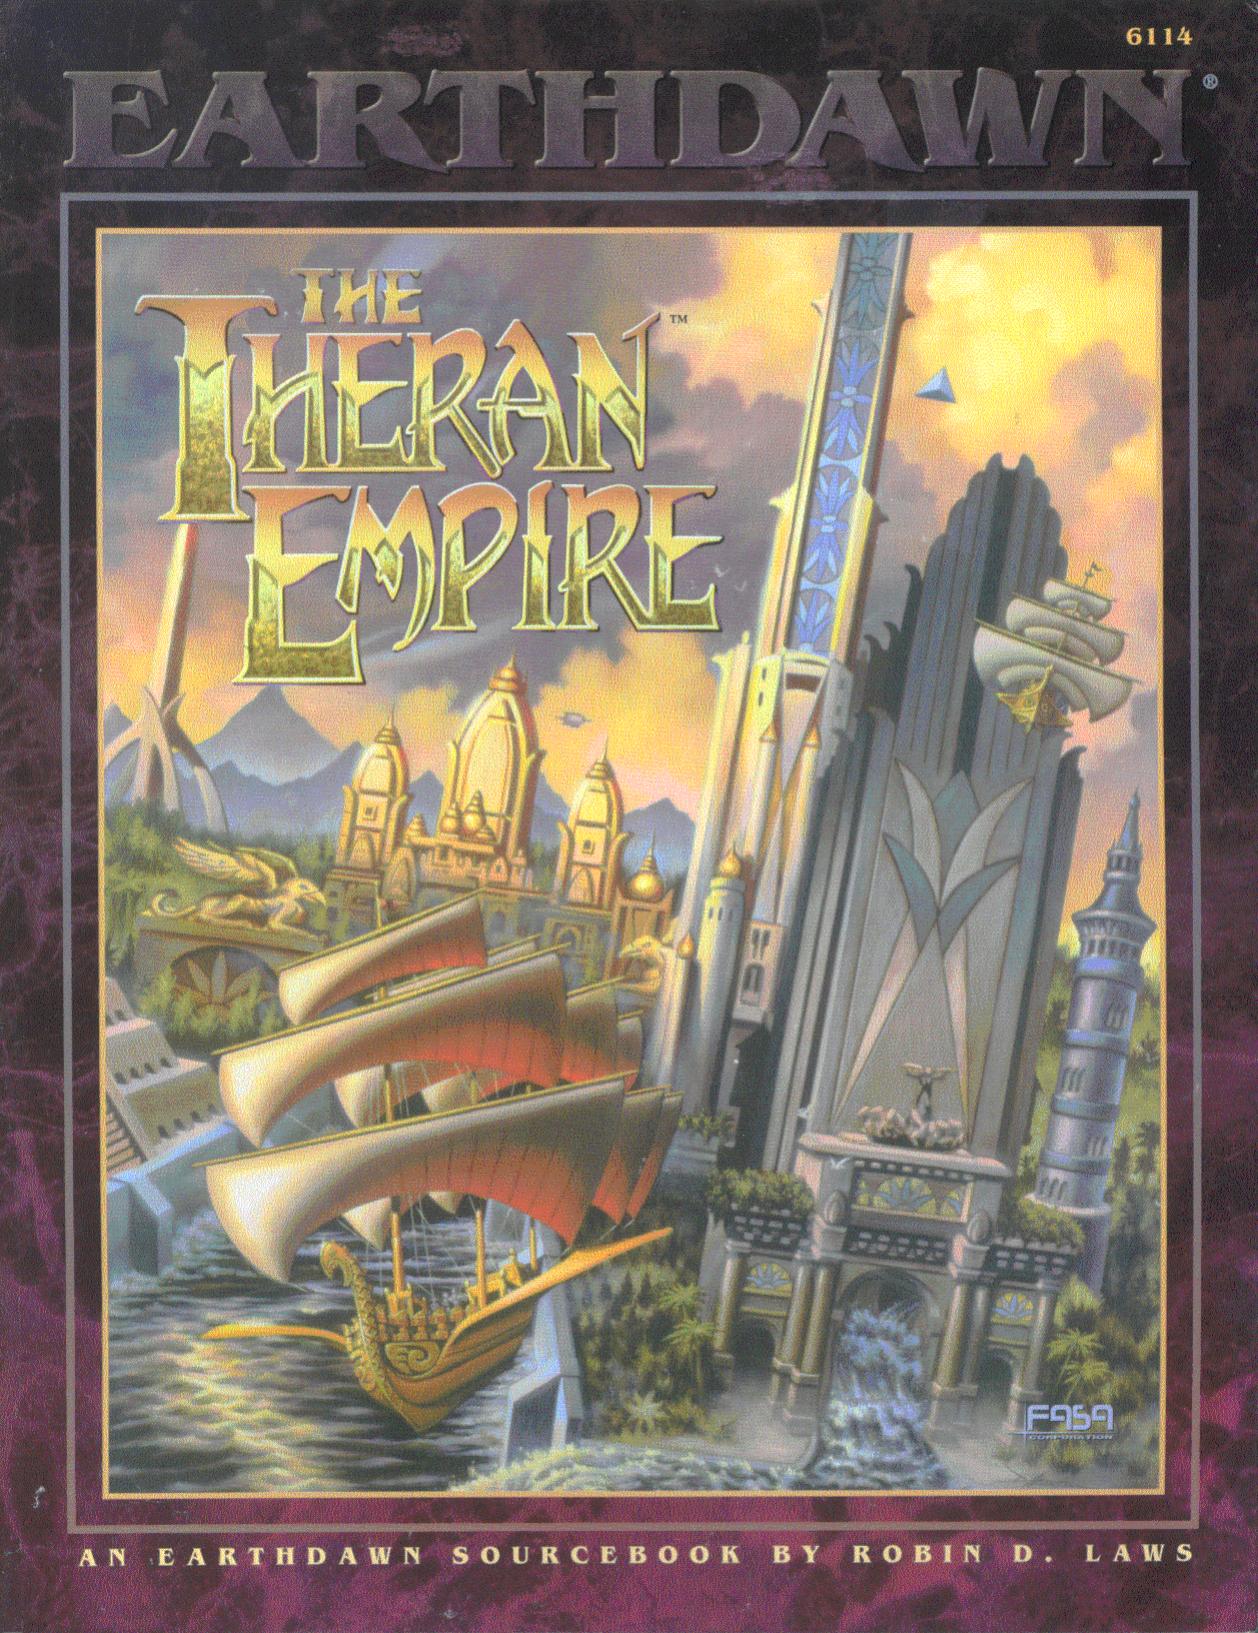 6114 The Theran Empire